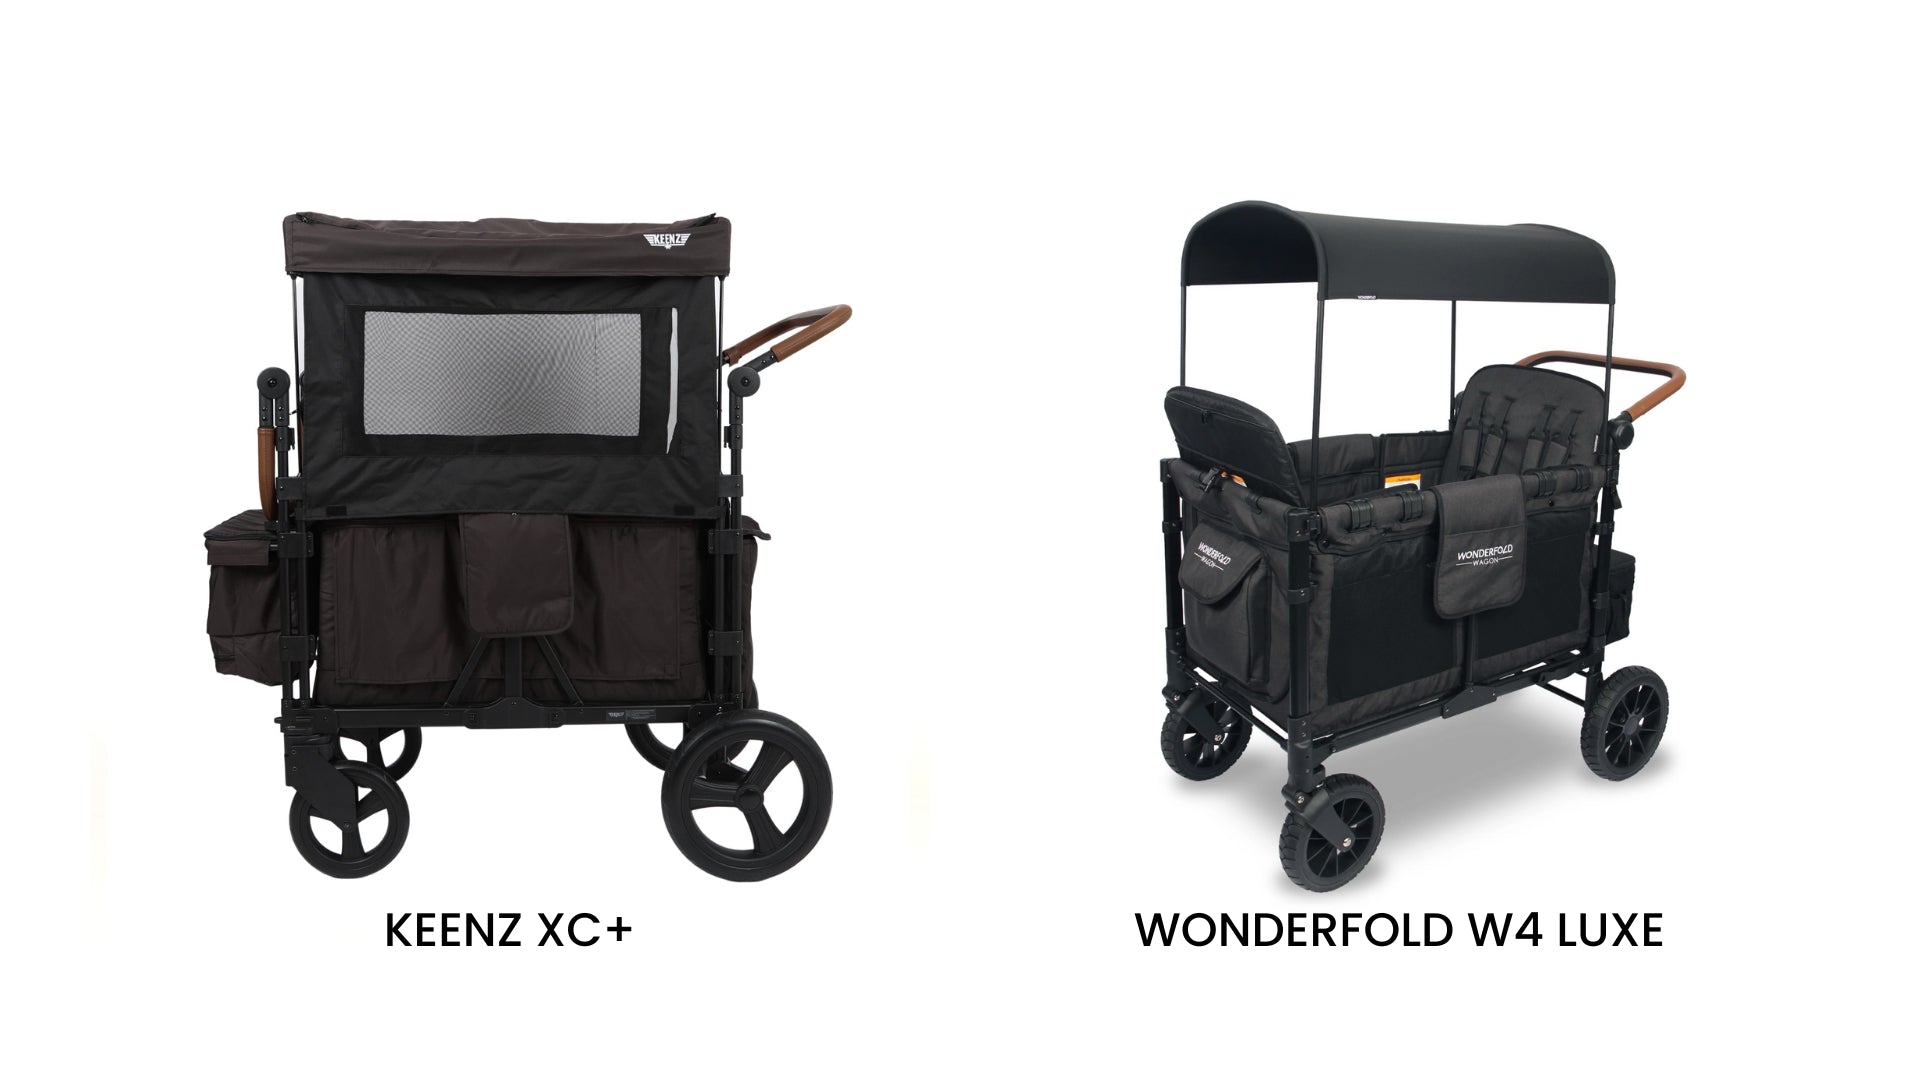 Keenz Xc+ Wagon vs. WonderFold W4 Luxe Wagon